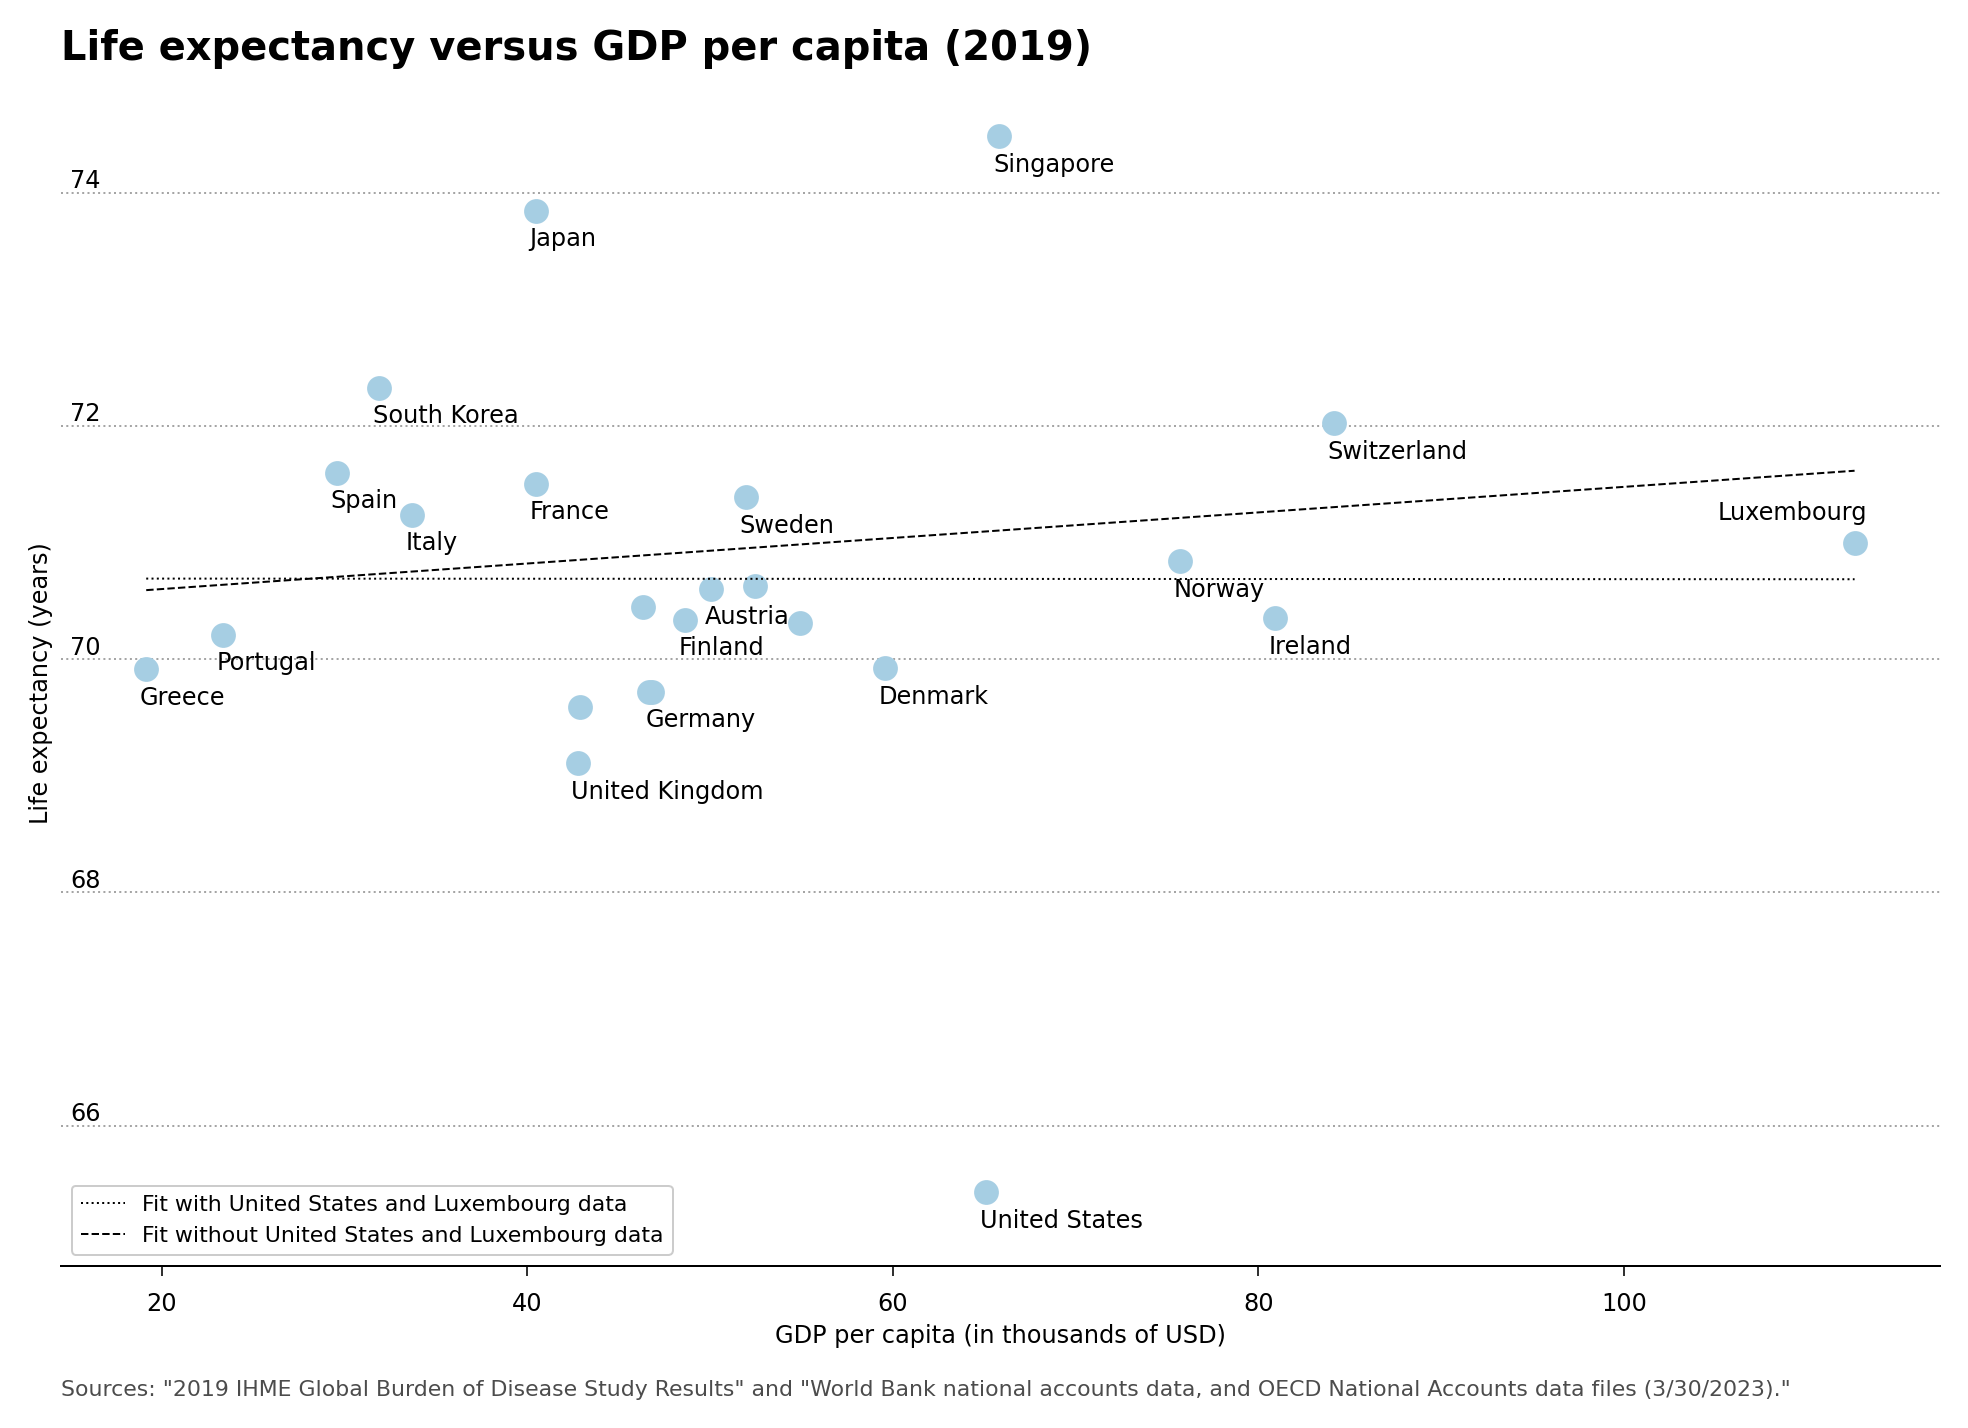 Life Expectancy versus GDP per Capita